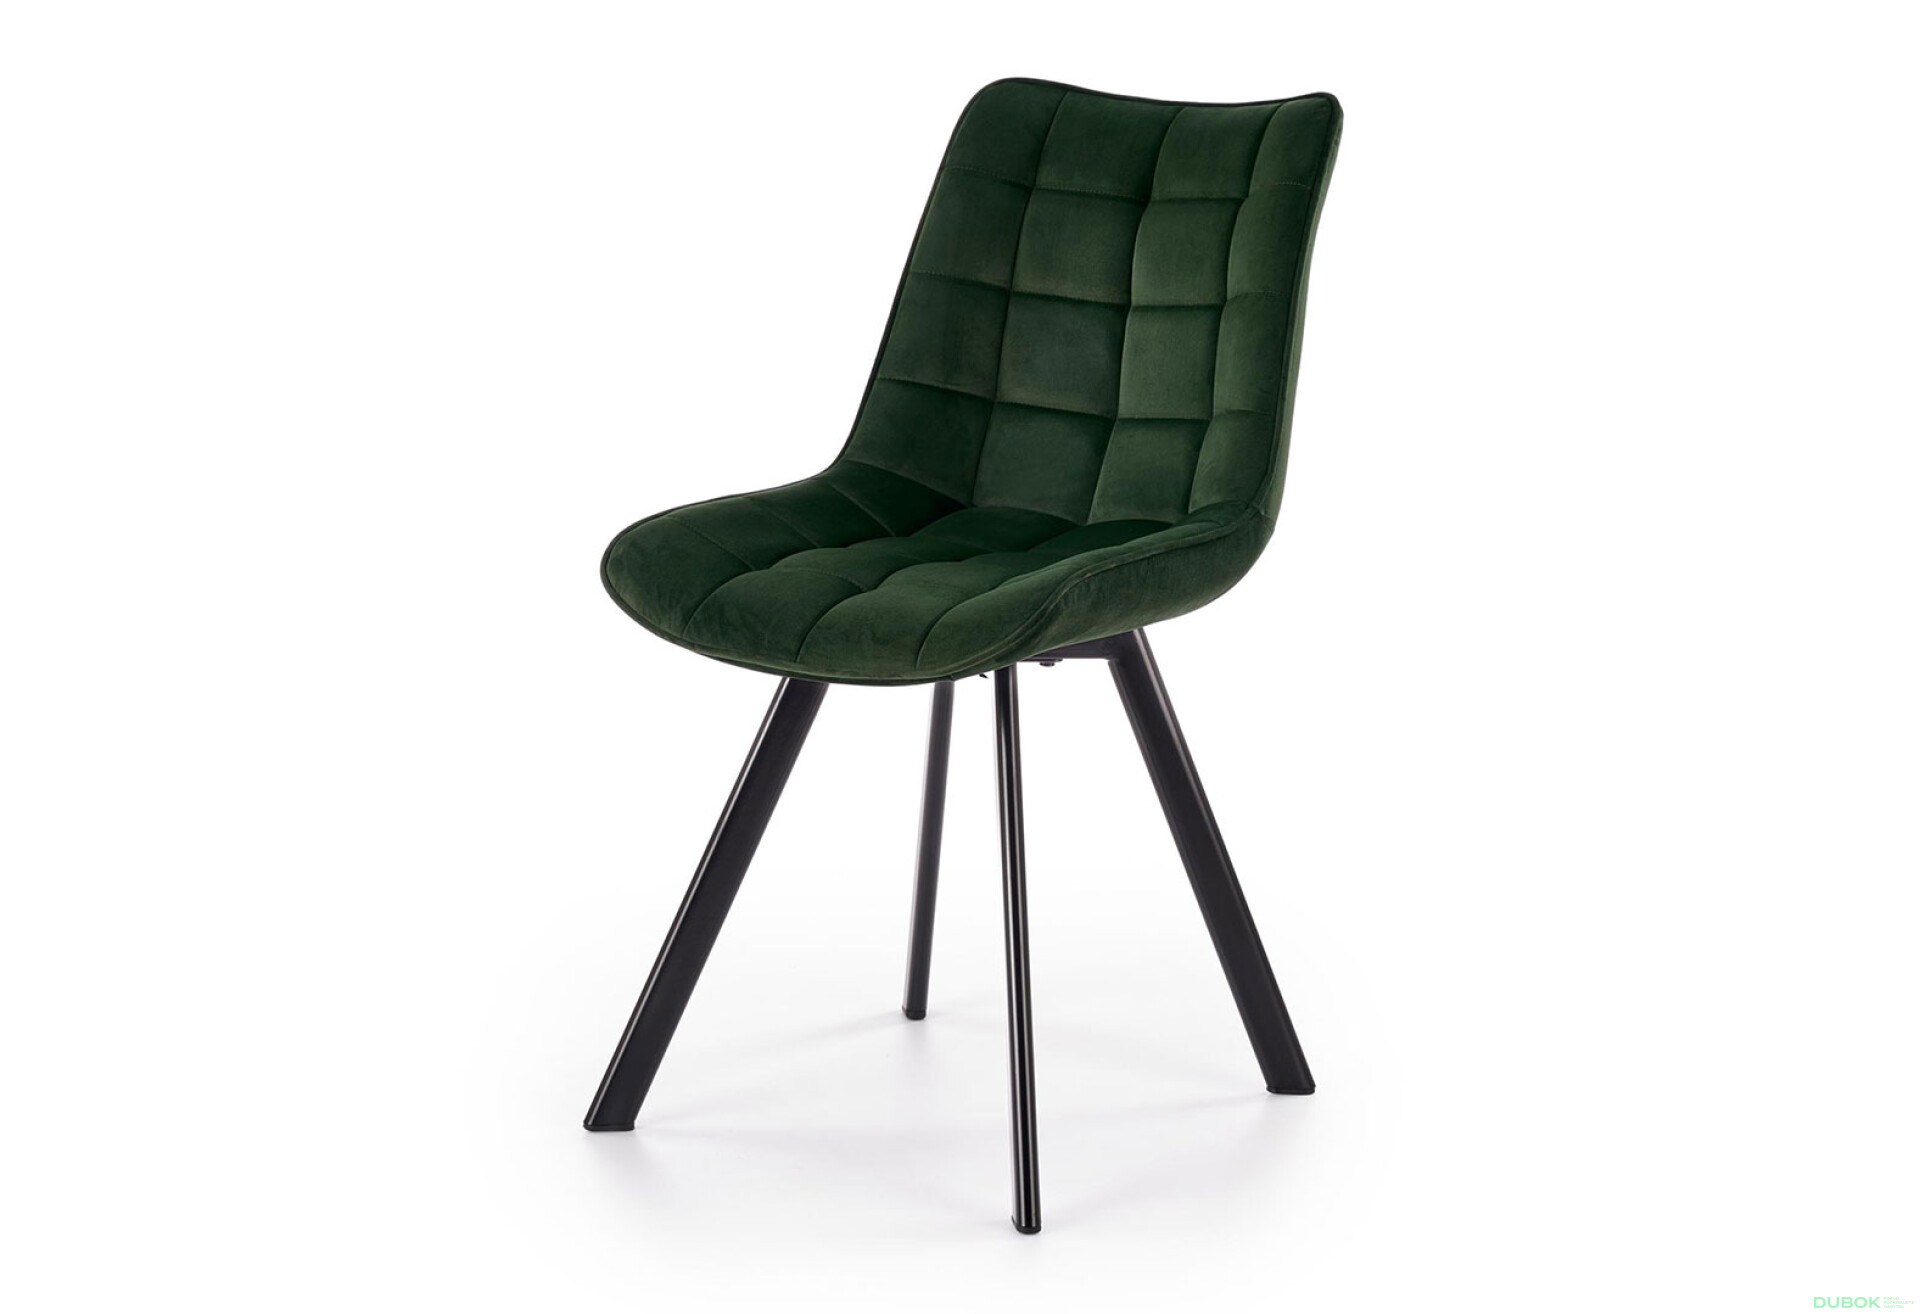 Фото 1 - Židle K332 černý kov / tmavý zelený